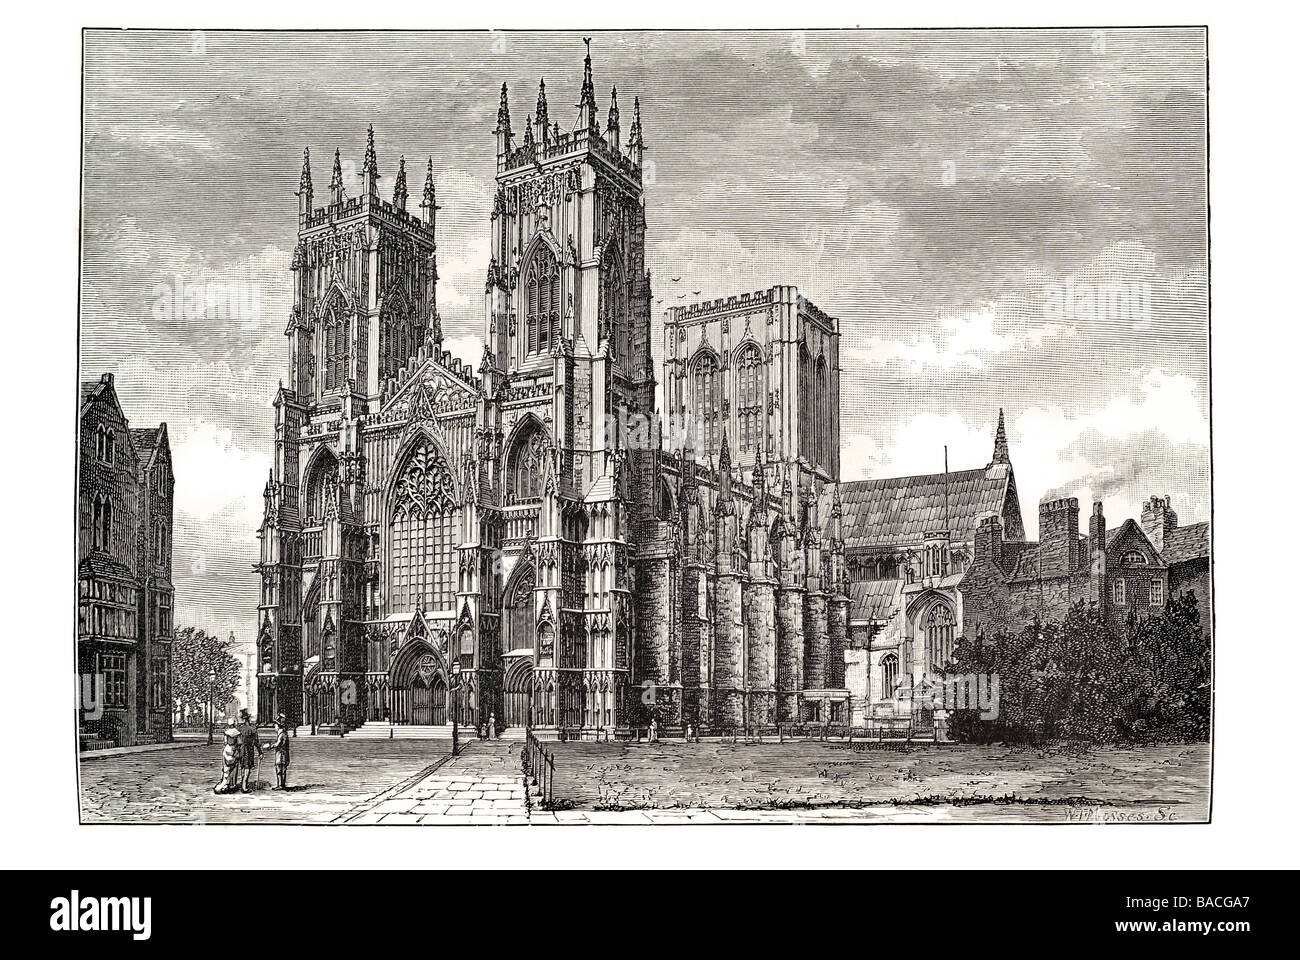 York Minster cathédrale gothique de l'Église catholique Archevêque Anglo Lady Chapel Fenêtre Grand Est Banque D'Images